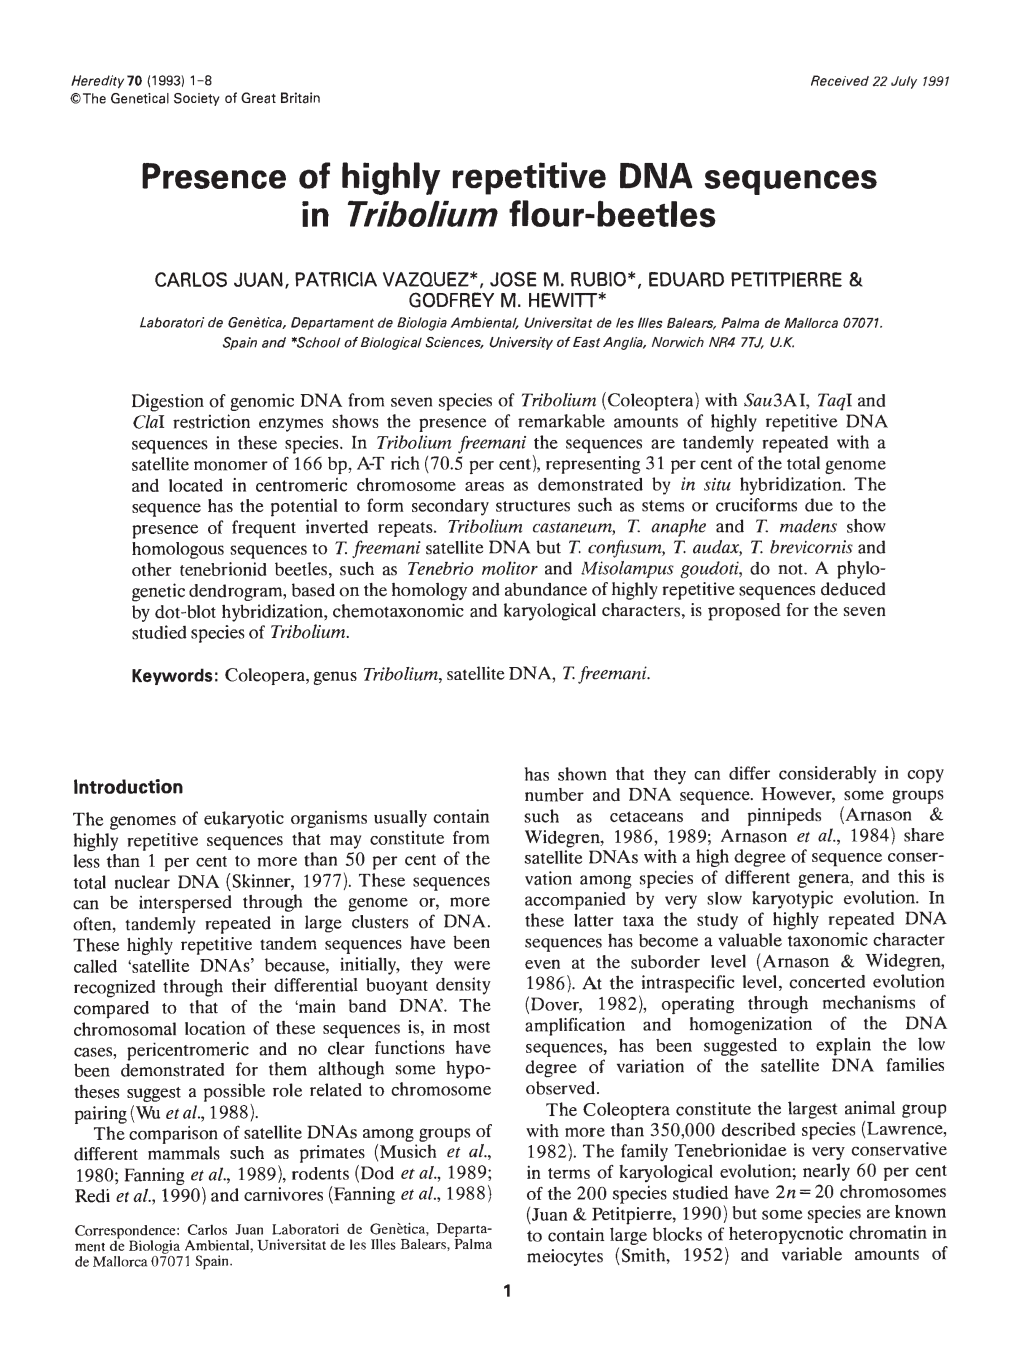 In Tribolium Flour-Beetles